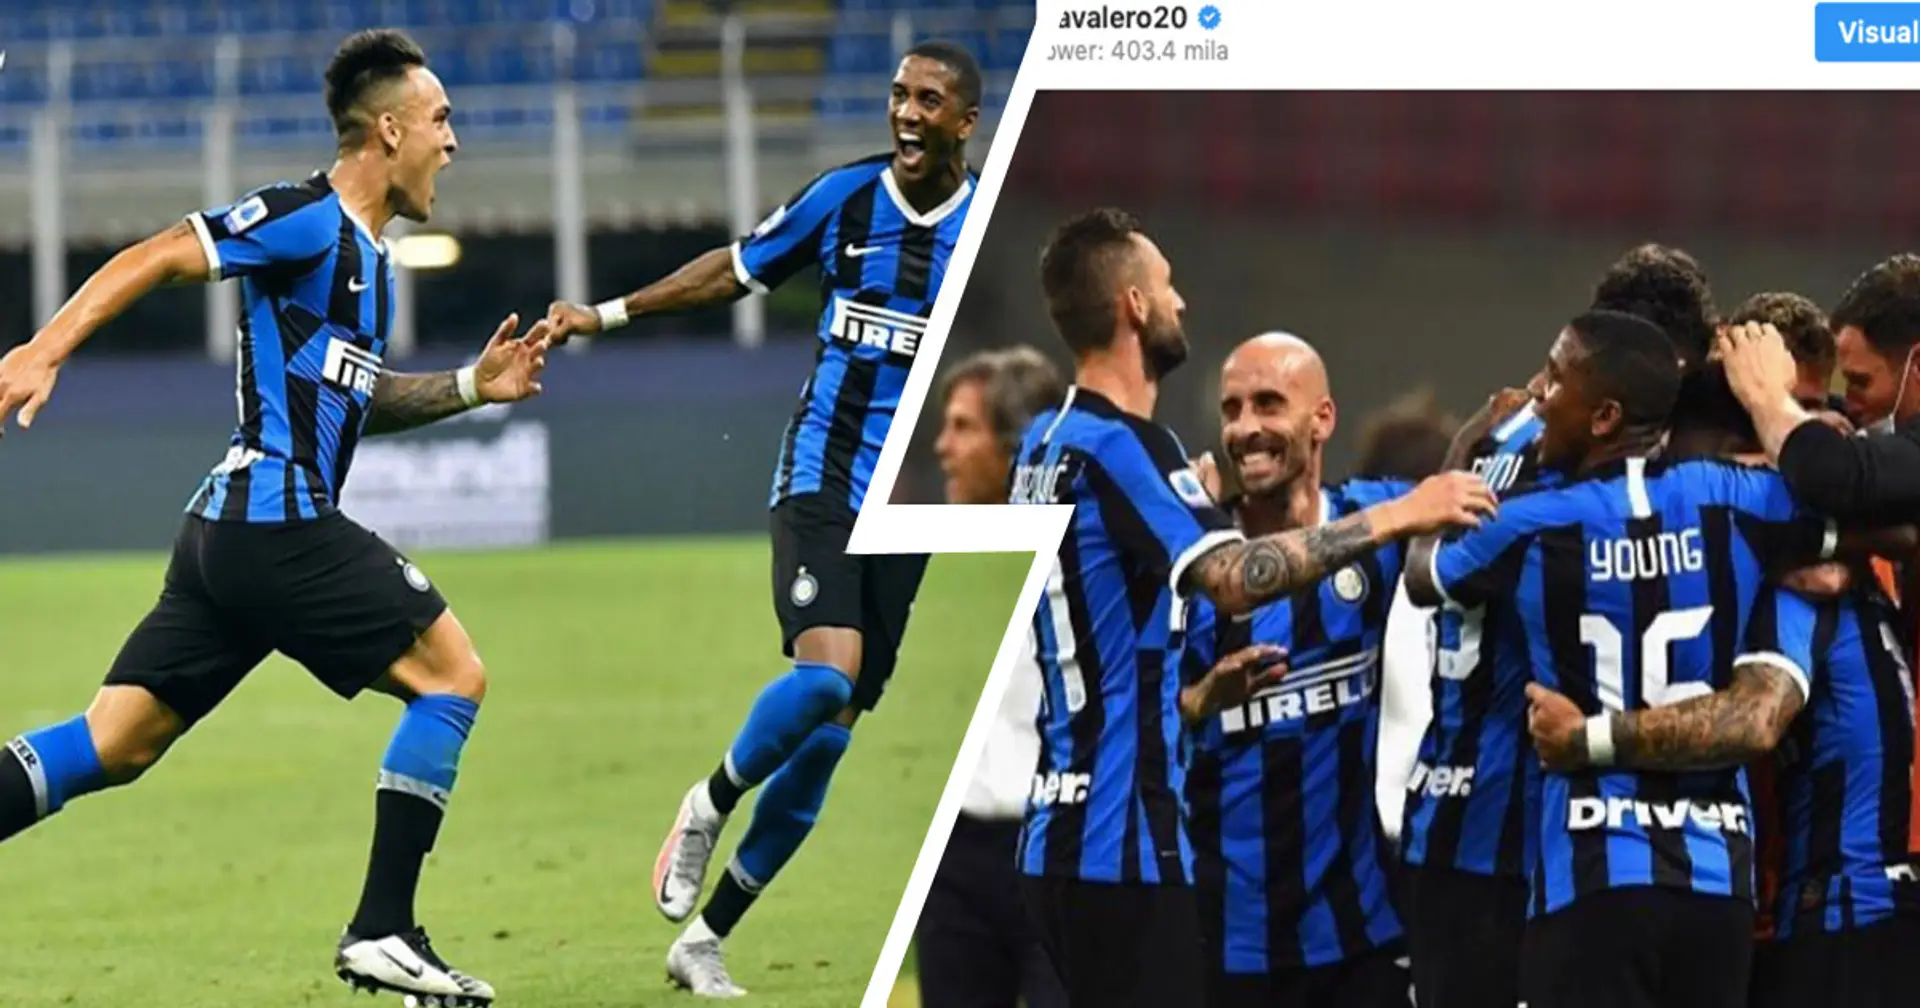 La gioia dei nerazzurri sui social dopo la vittoria sul Torino, Valero a Lautaro danno la carica all'Inter